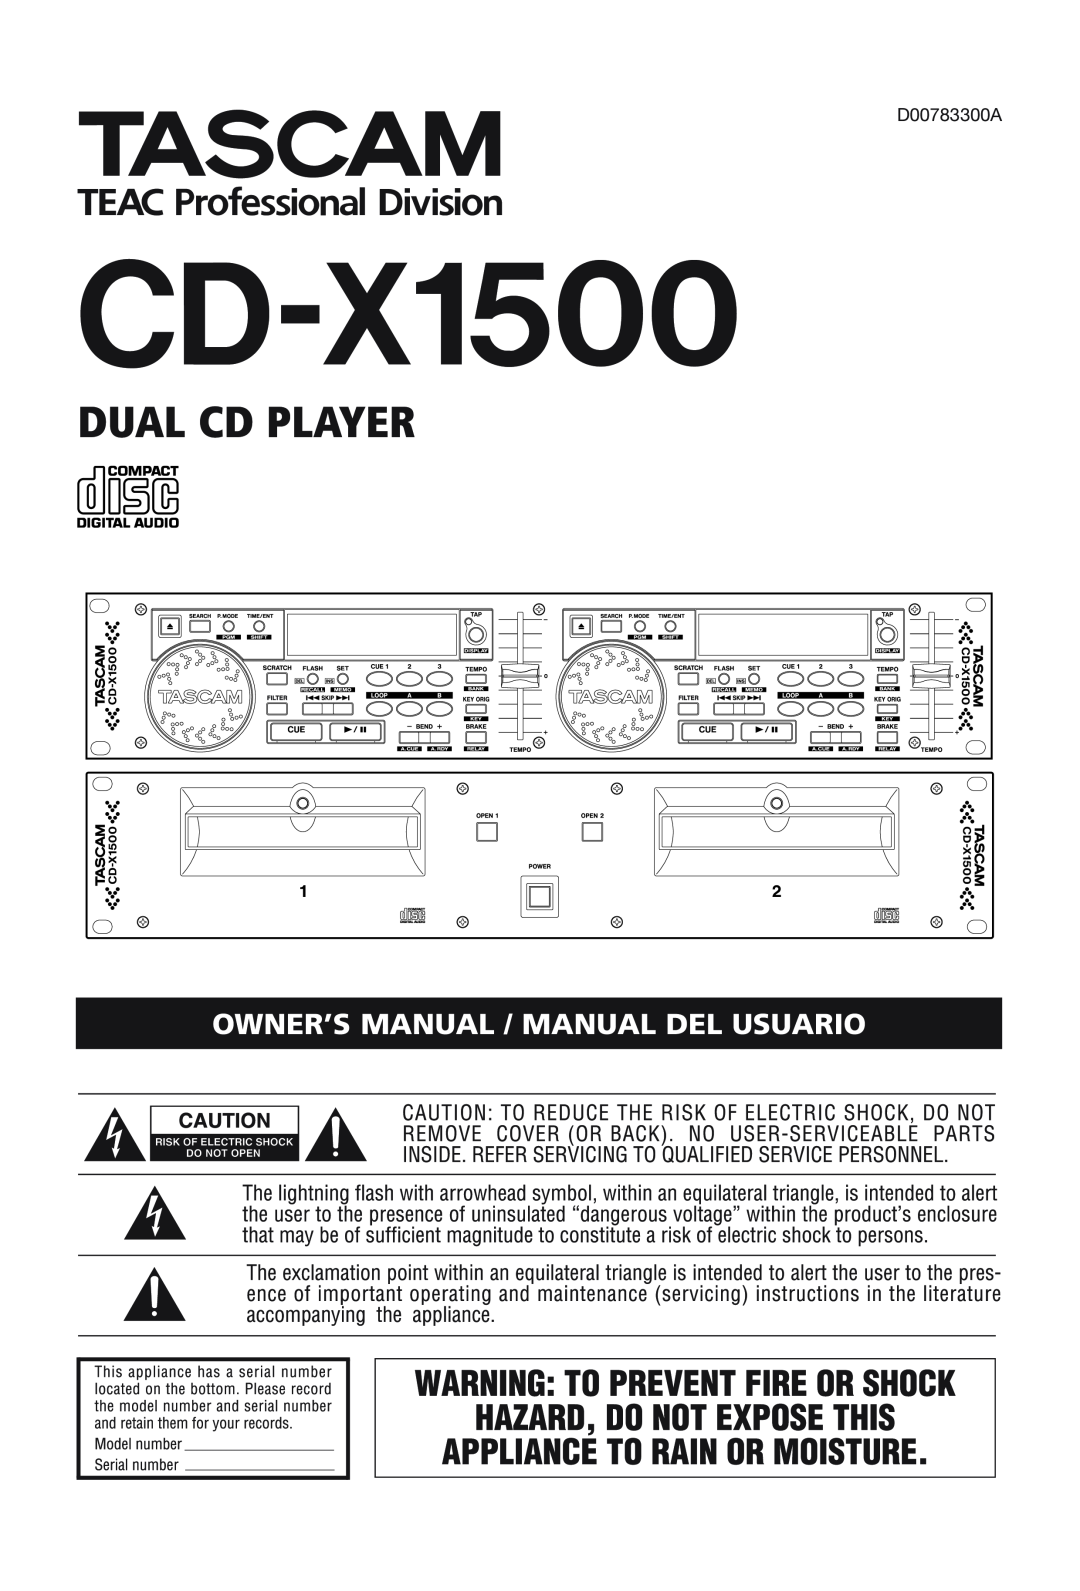 Tascam CD-X1500 owner manual Dual Cd Player 